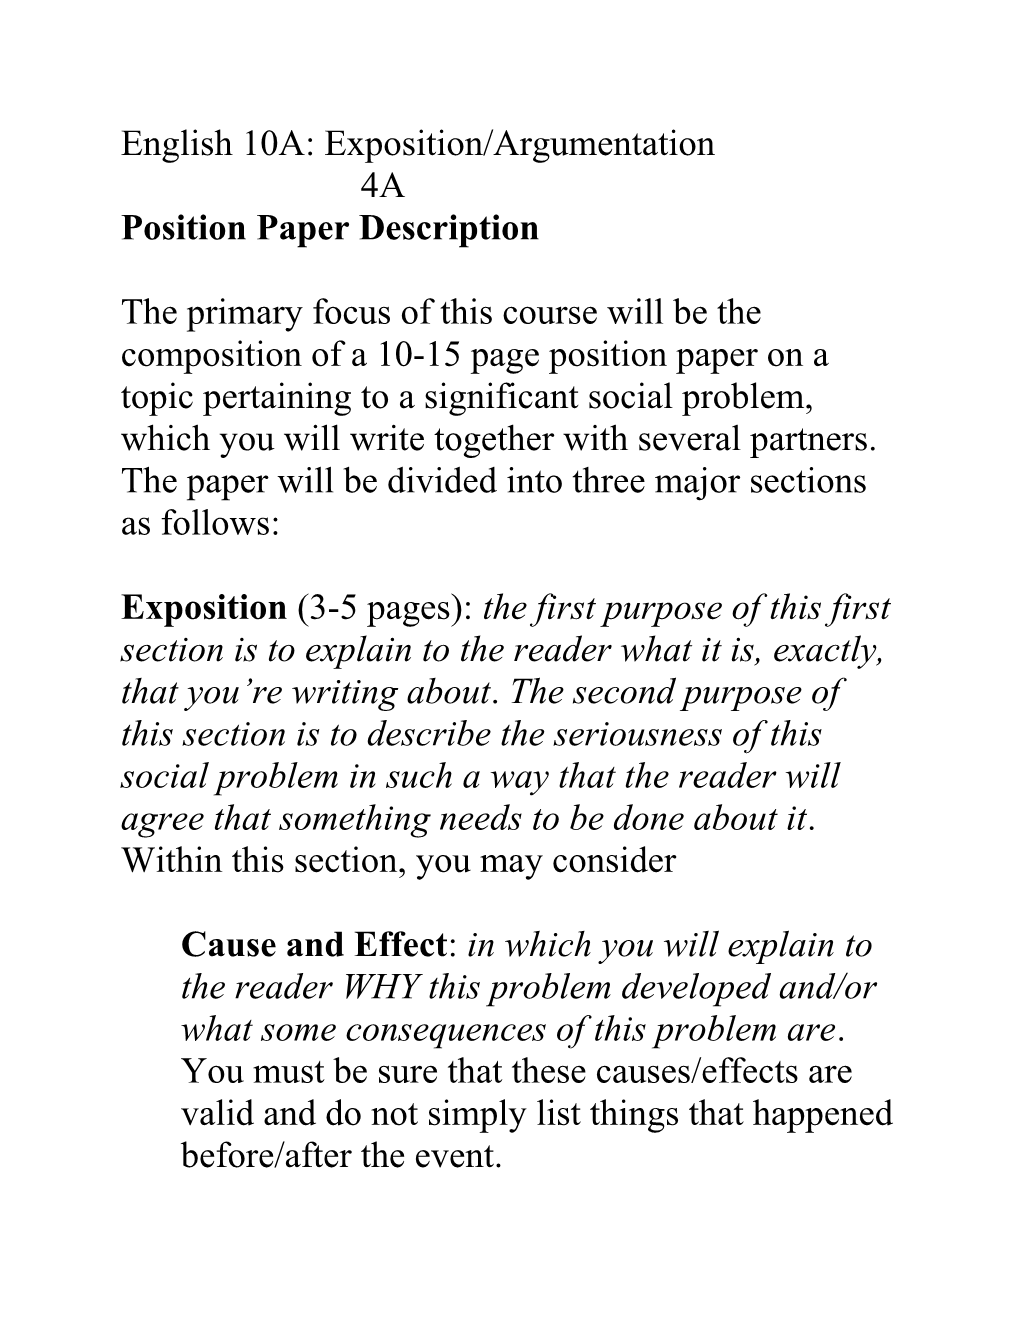 Position Paper Description